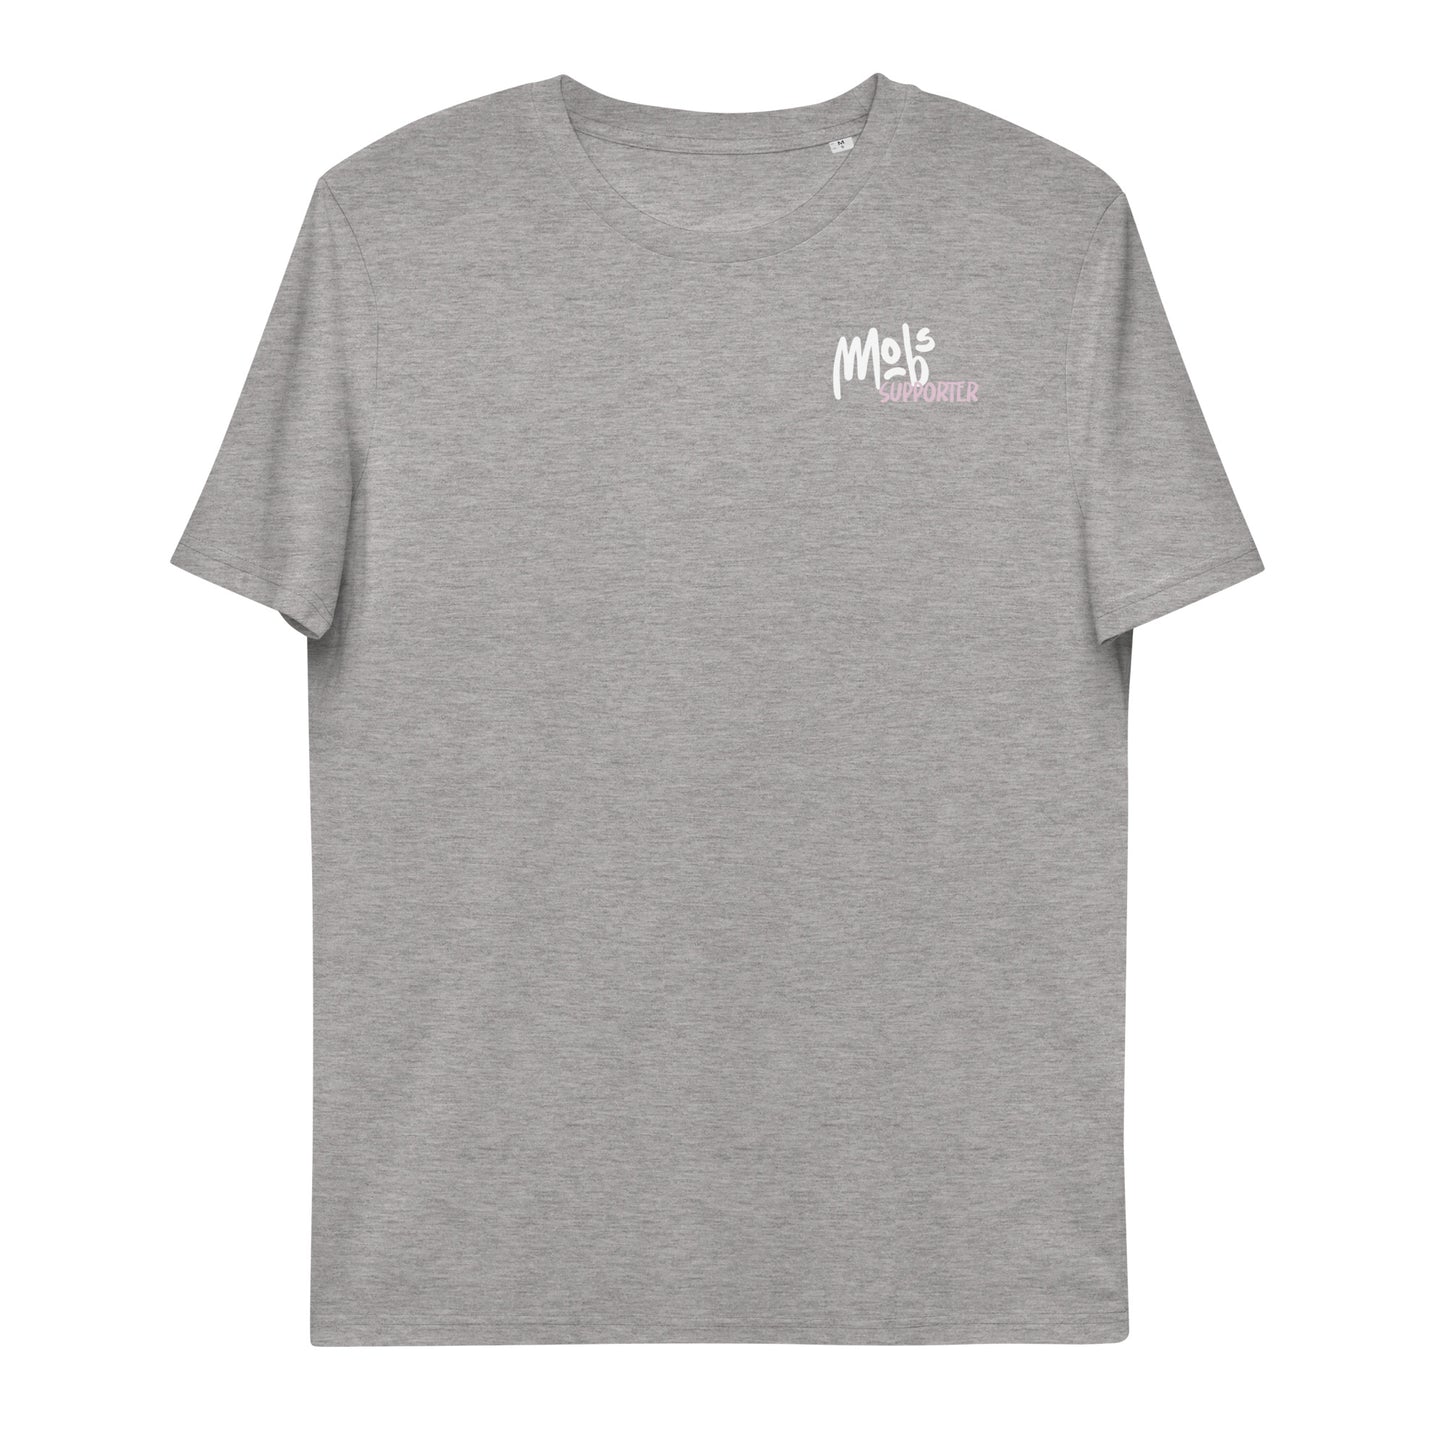 Mobs Supporter Unisex-Bio-Baumwoll-T-Shirt